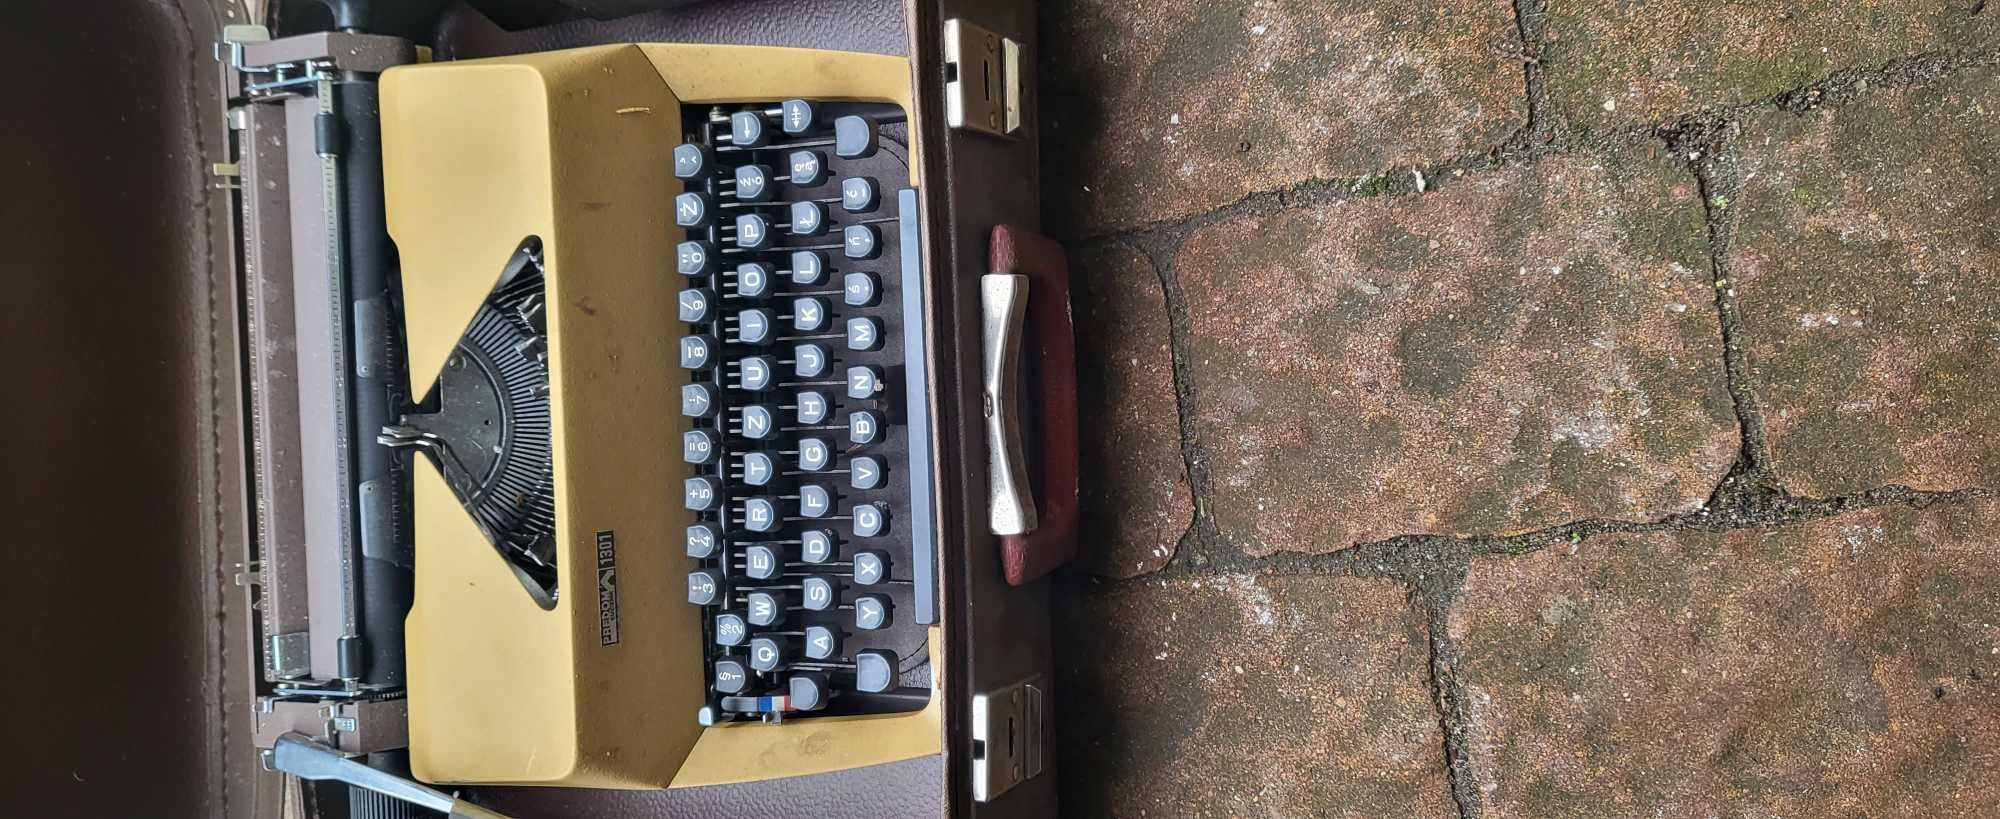 Maszyna do pisania cena 500 zł